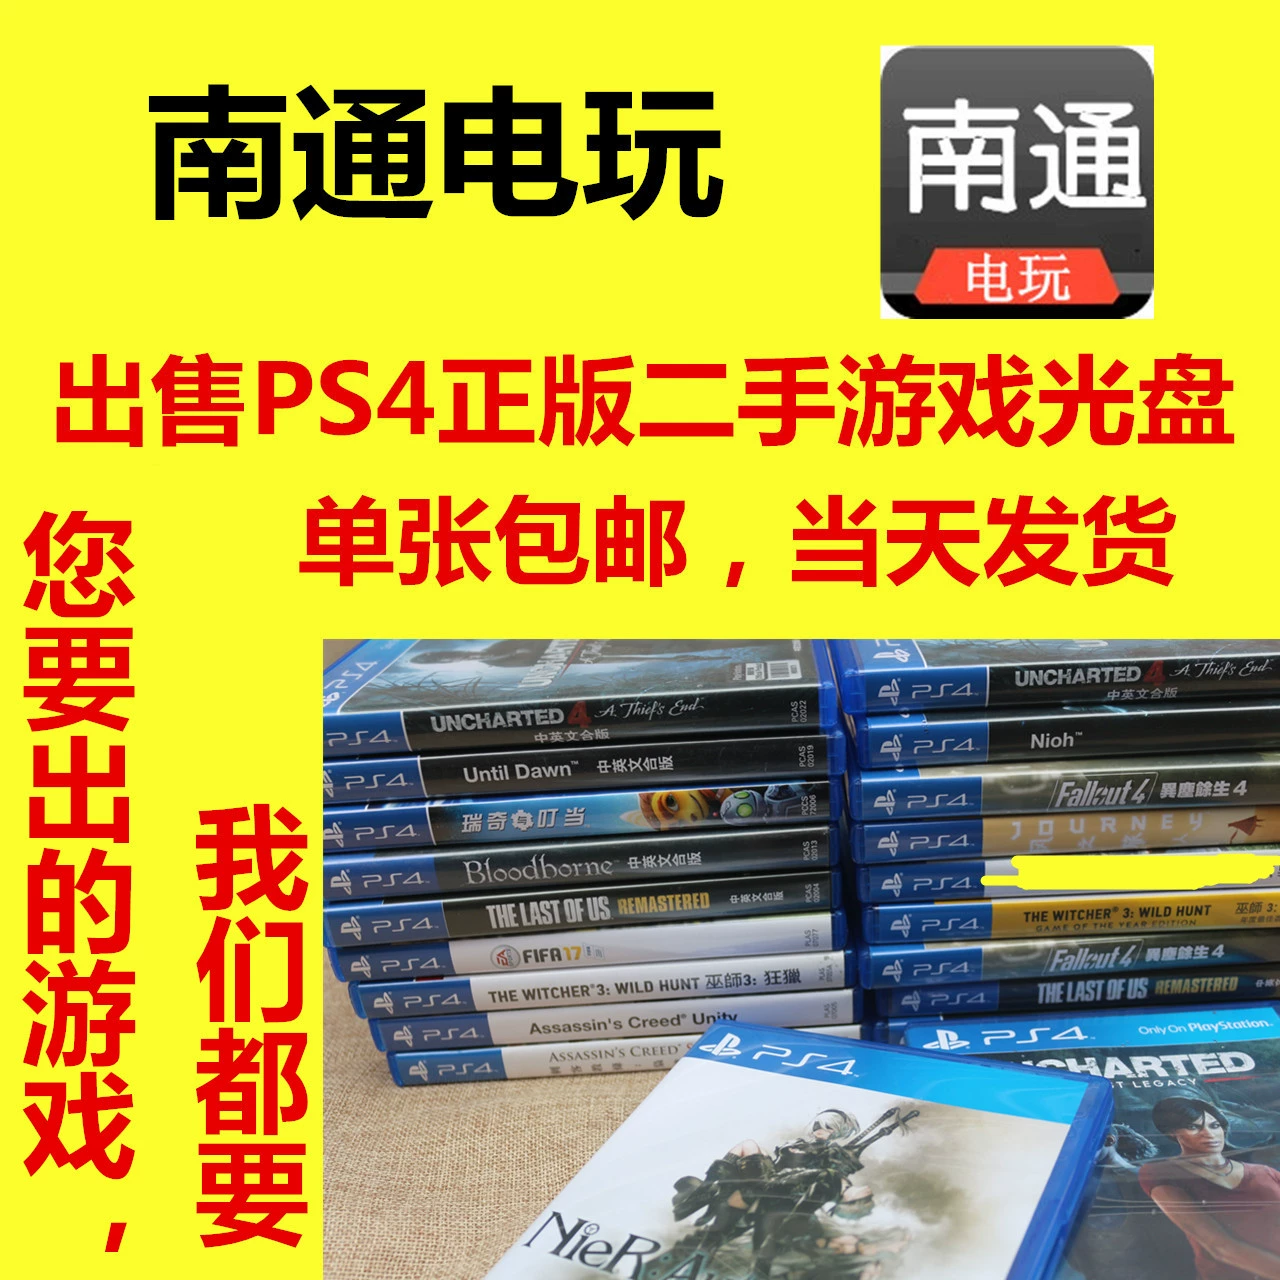 ps3游戏光碟哪里有卖_龙岩哪有卖ps3的游戏光碟_龙岩卖光碟游戏有ps3的店吗